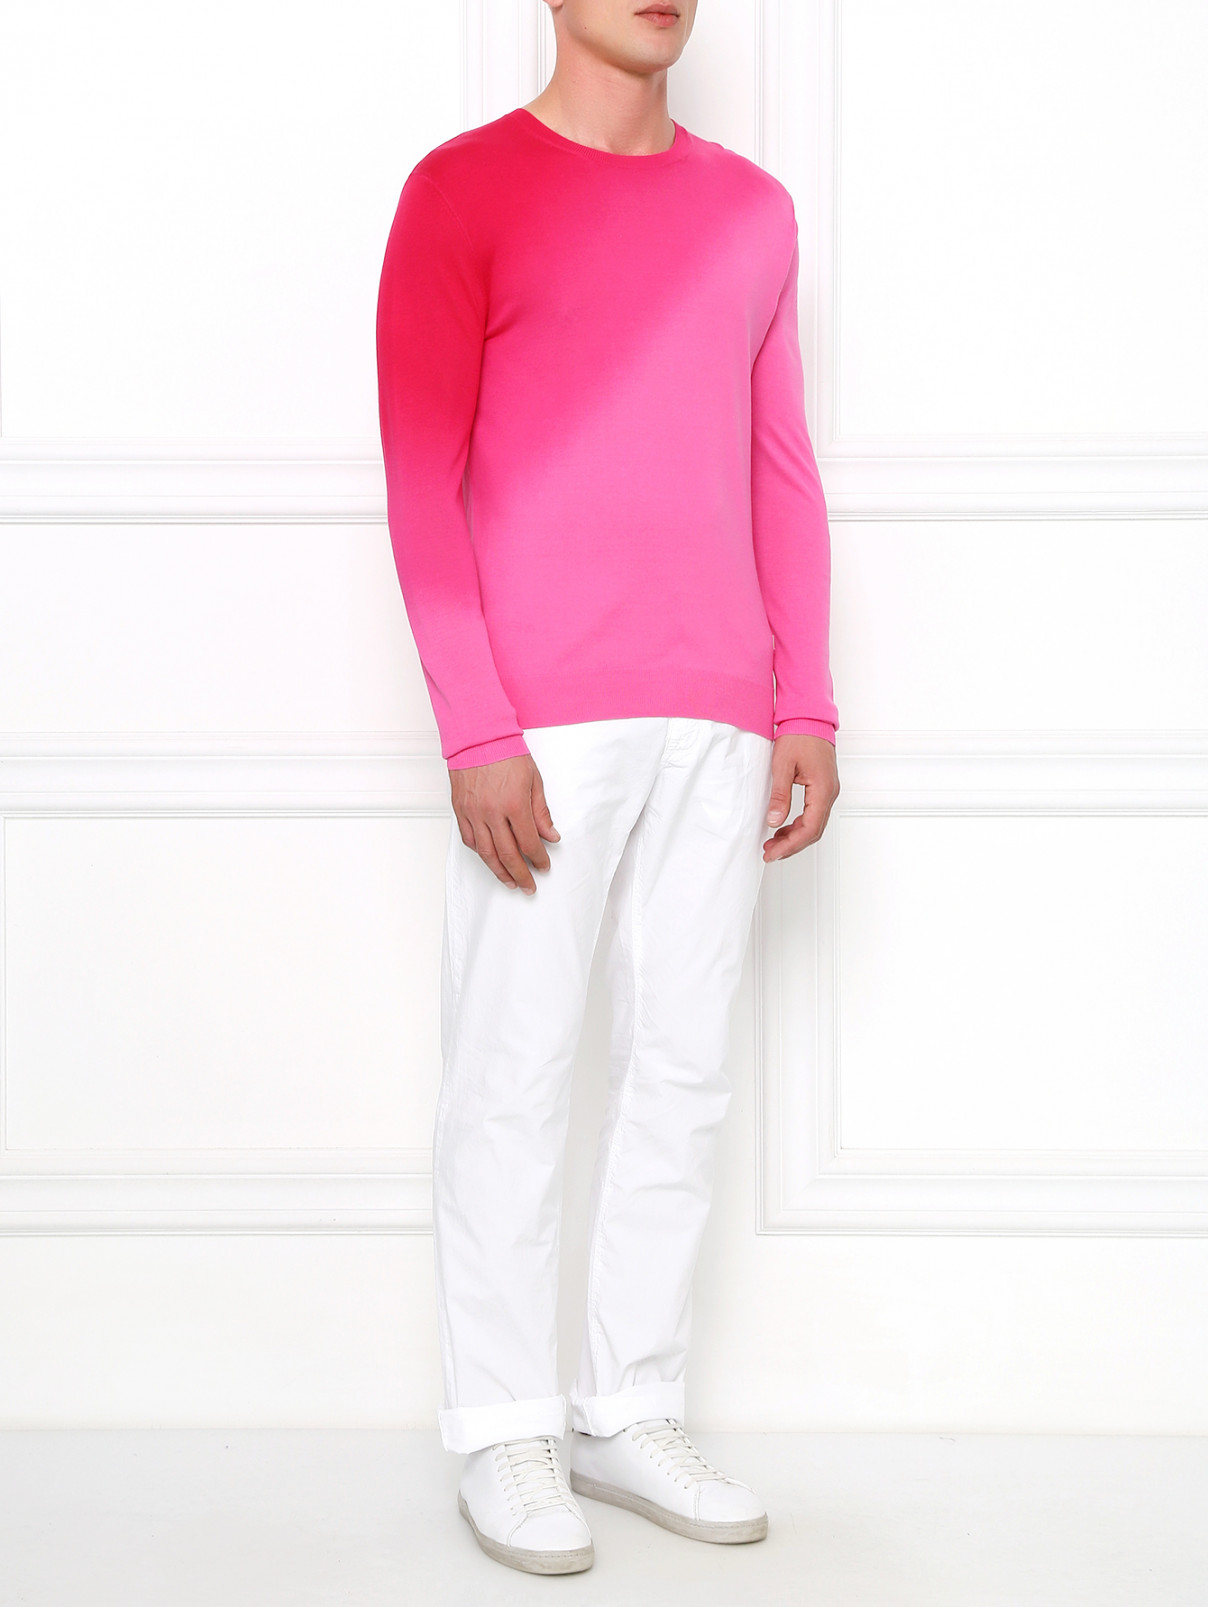 Джемпер из шелка расцветки "градиент" Versace Collection  –  Модель Общий вид  – Цвет:  Розовый